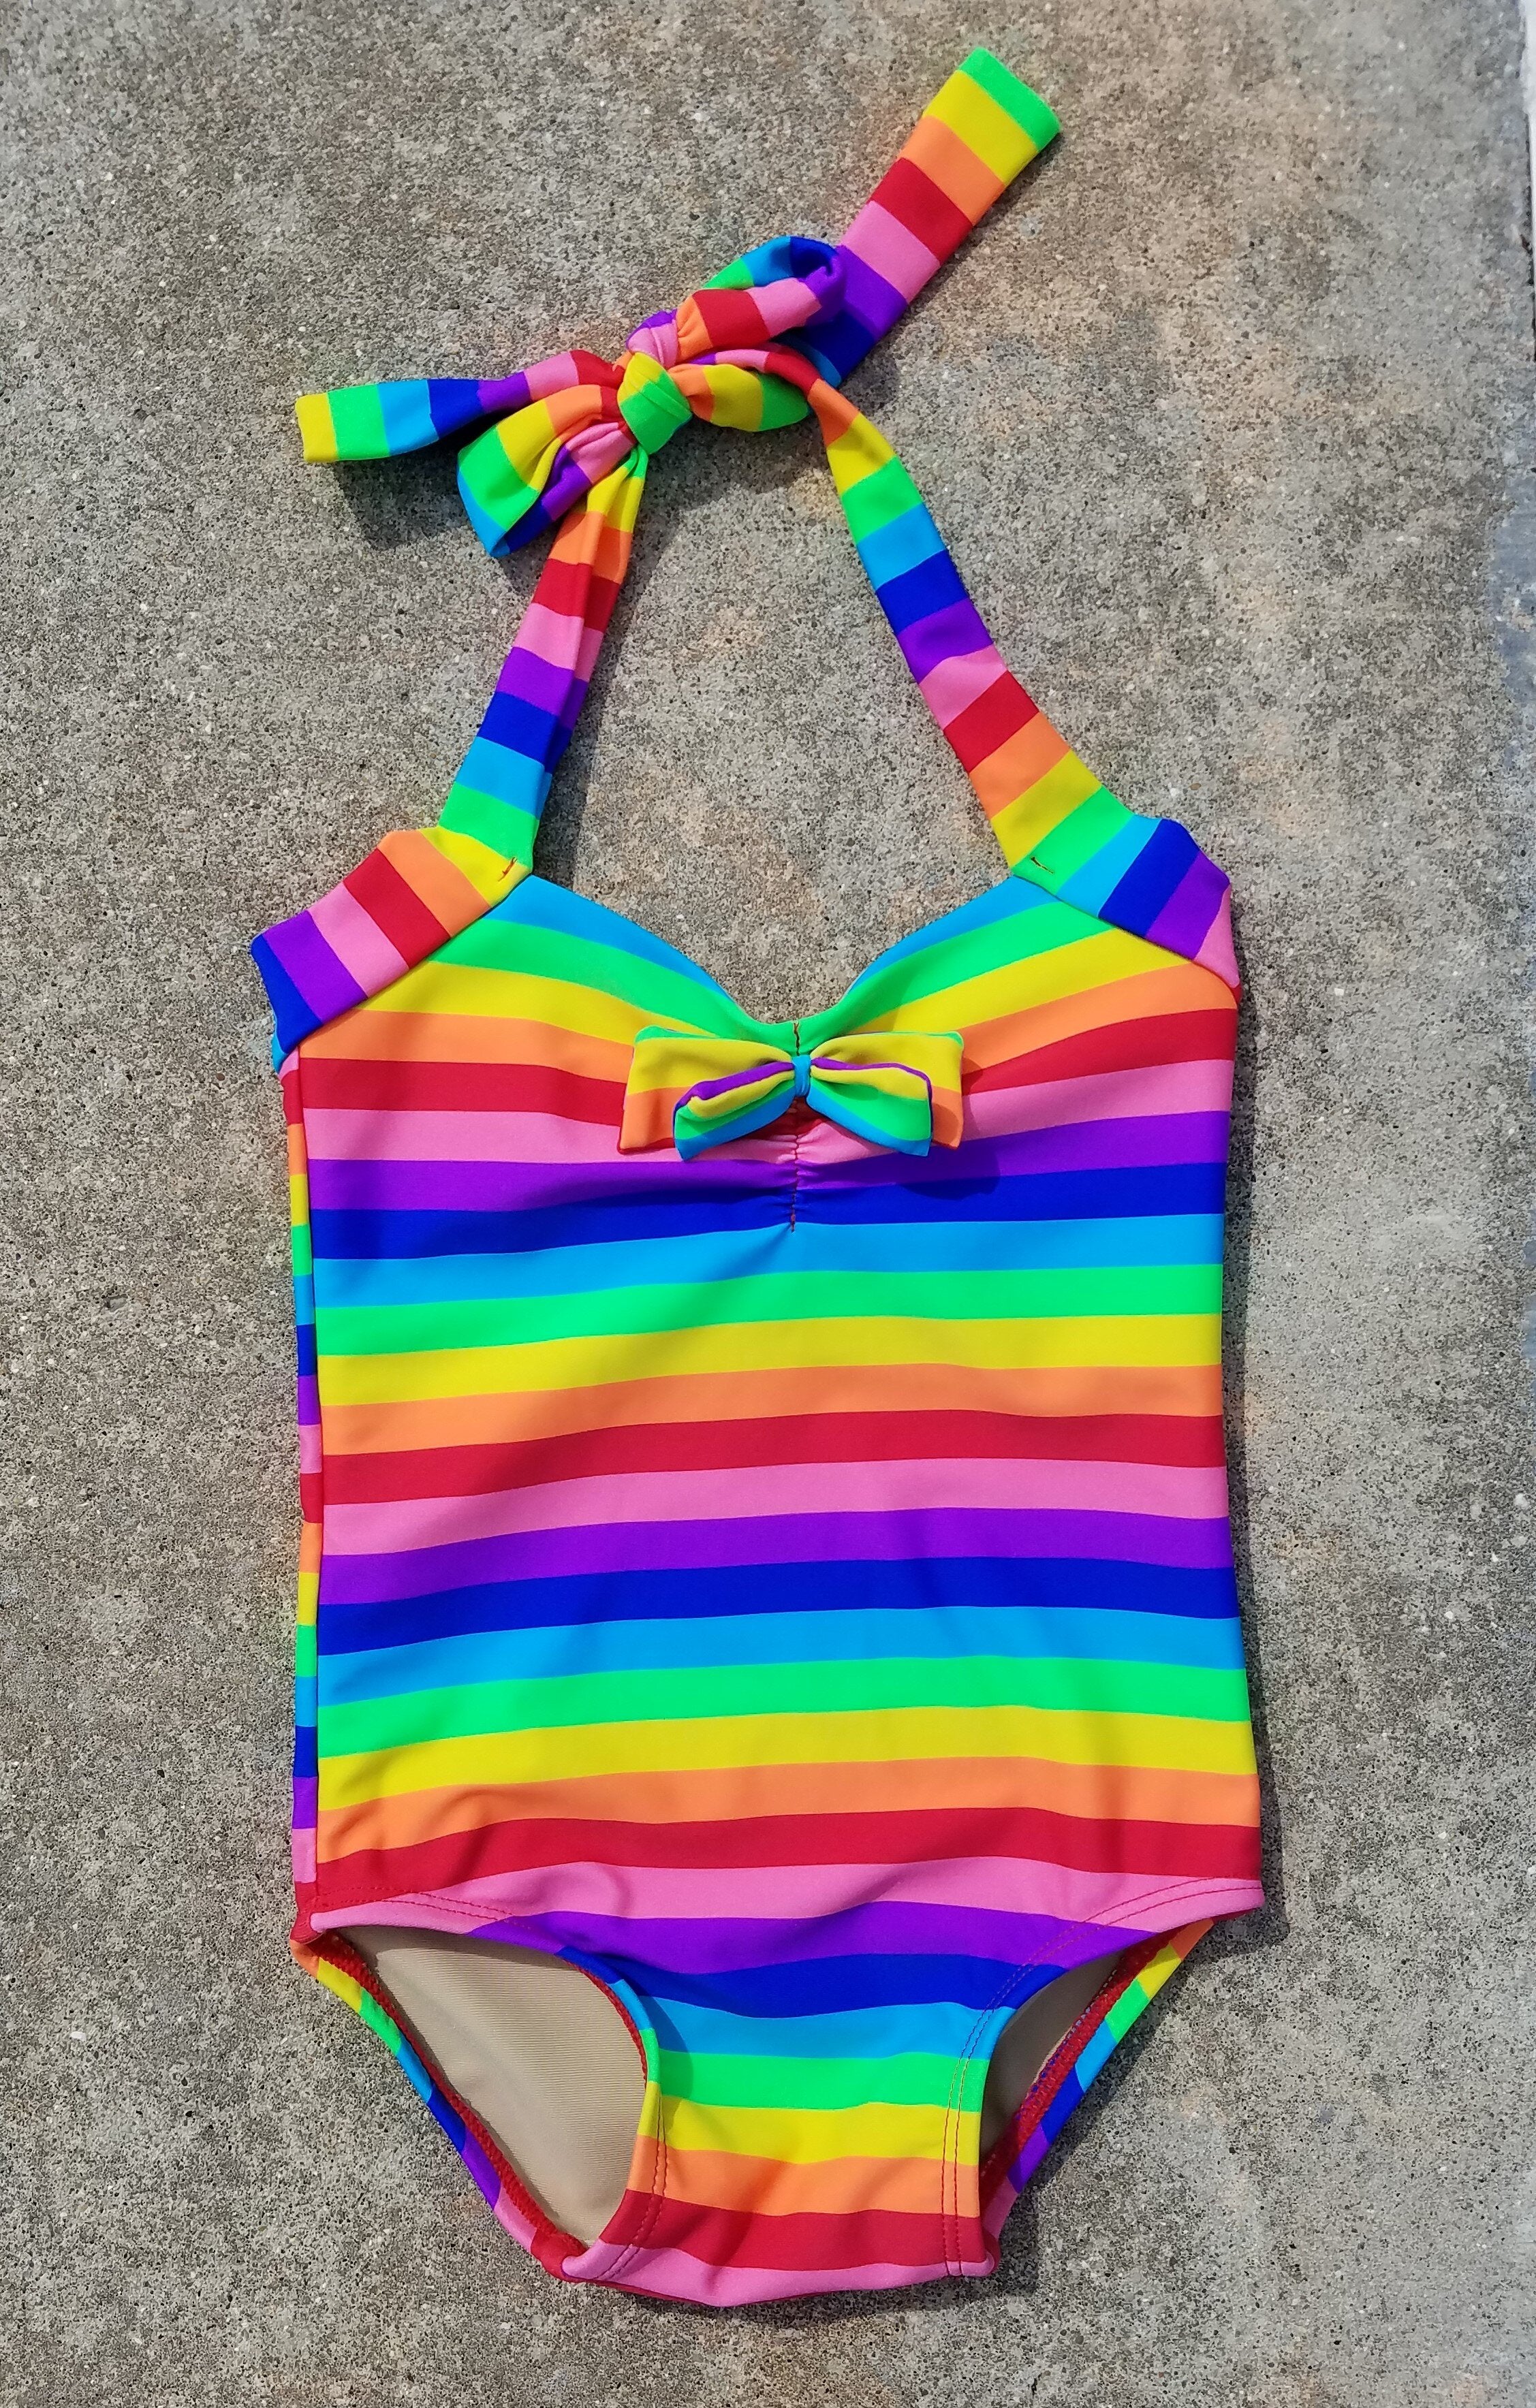 Rainbow Stripe Baby Swimsuit - Twinkle Twinkle Little One